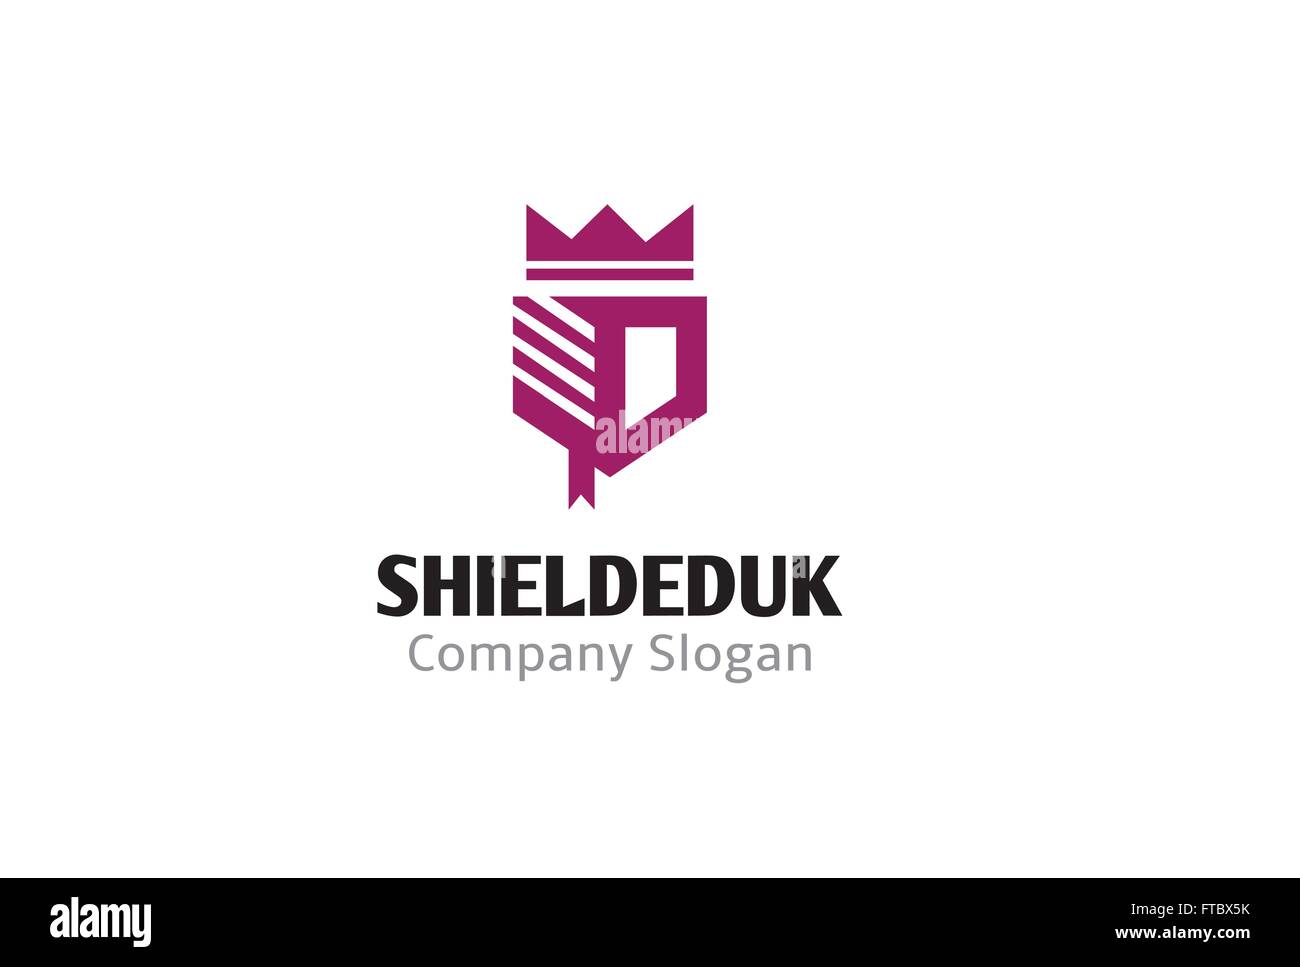 Shield Education Design Illustration Stock Vector